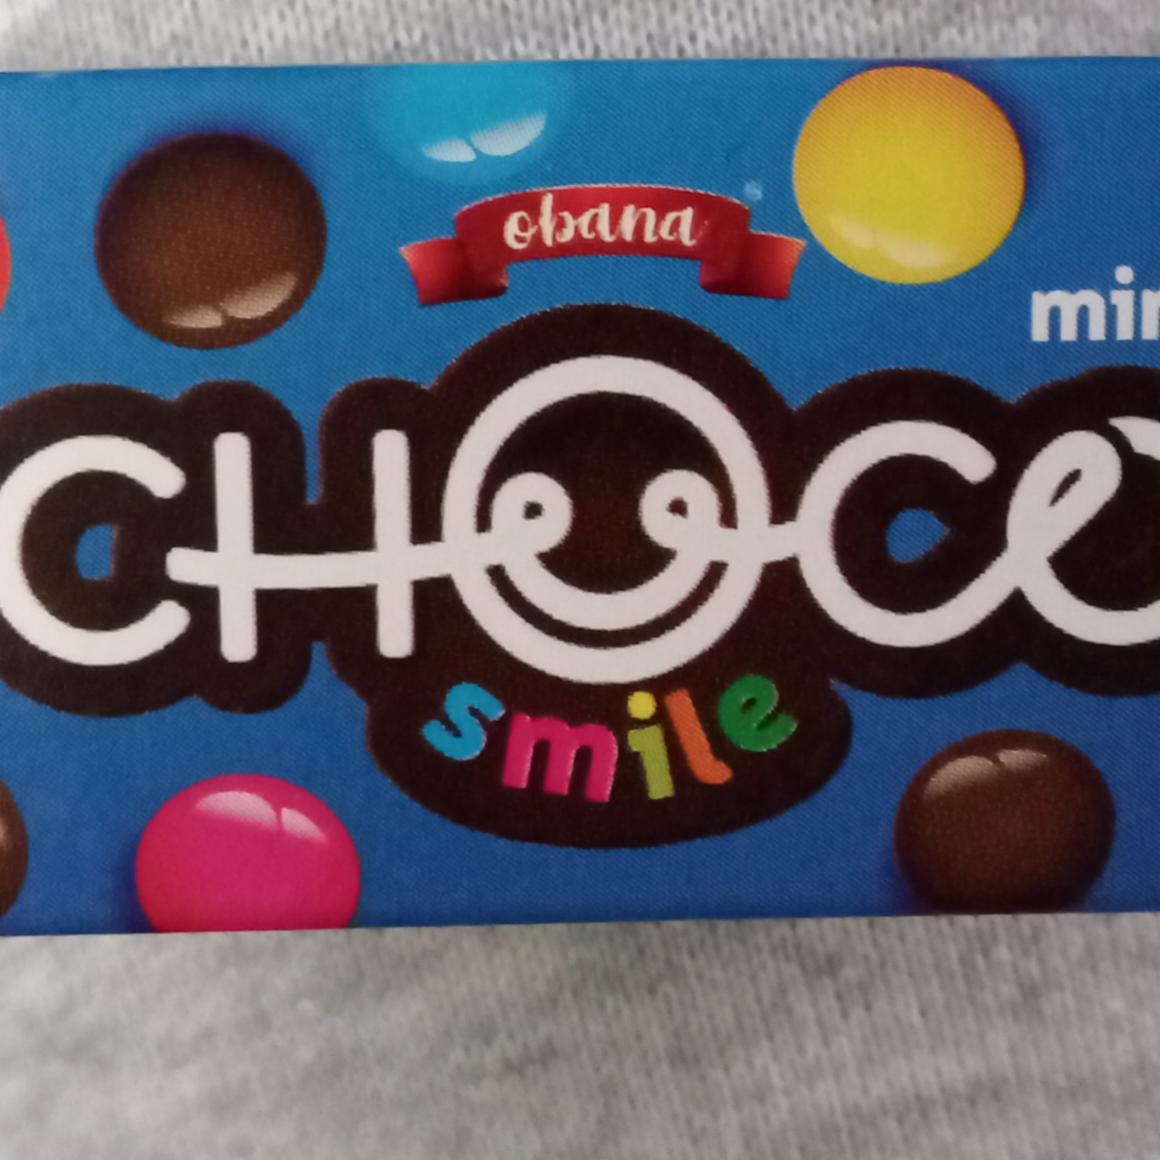 Фото - Драже шоколадное Choco Smile Mini Obana